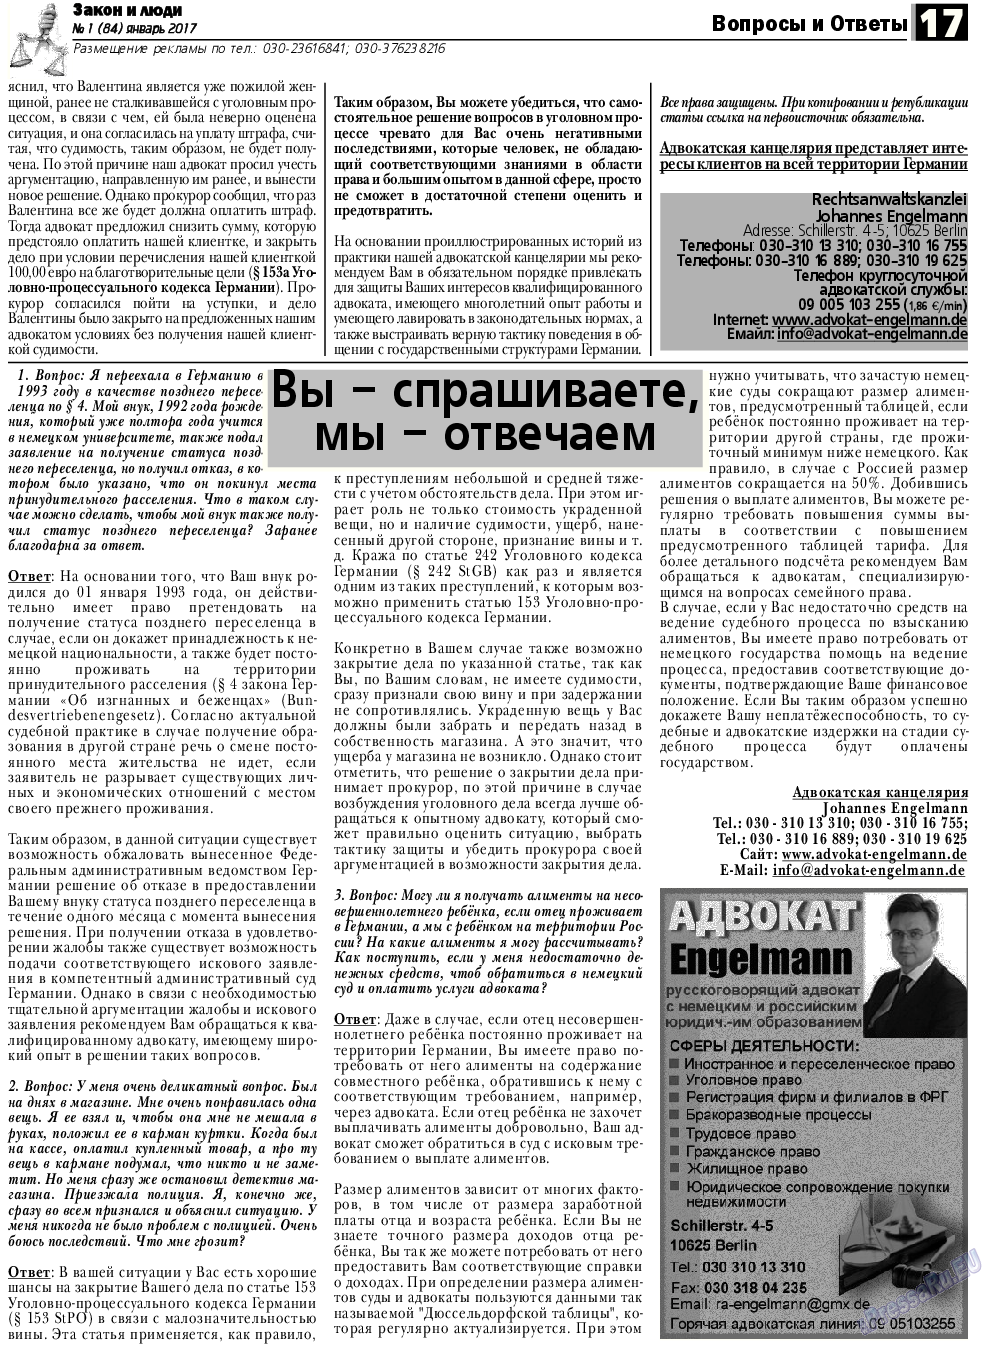 Закон и люди, газета. 2017 №1 стр.17